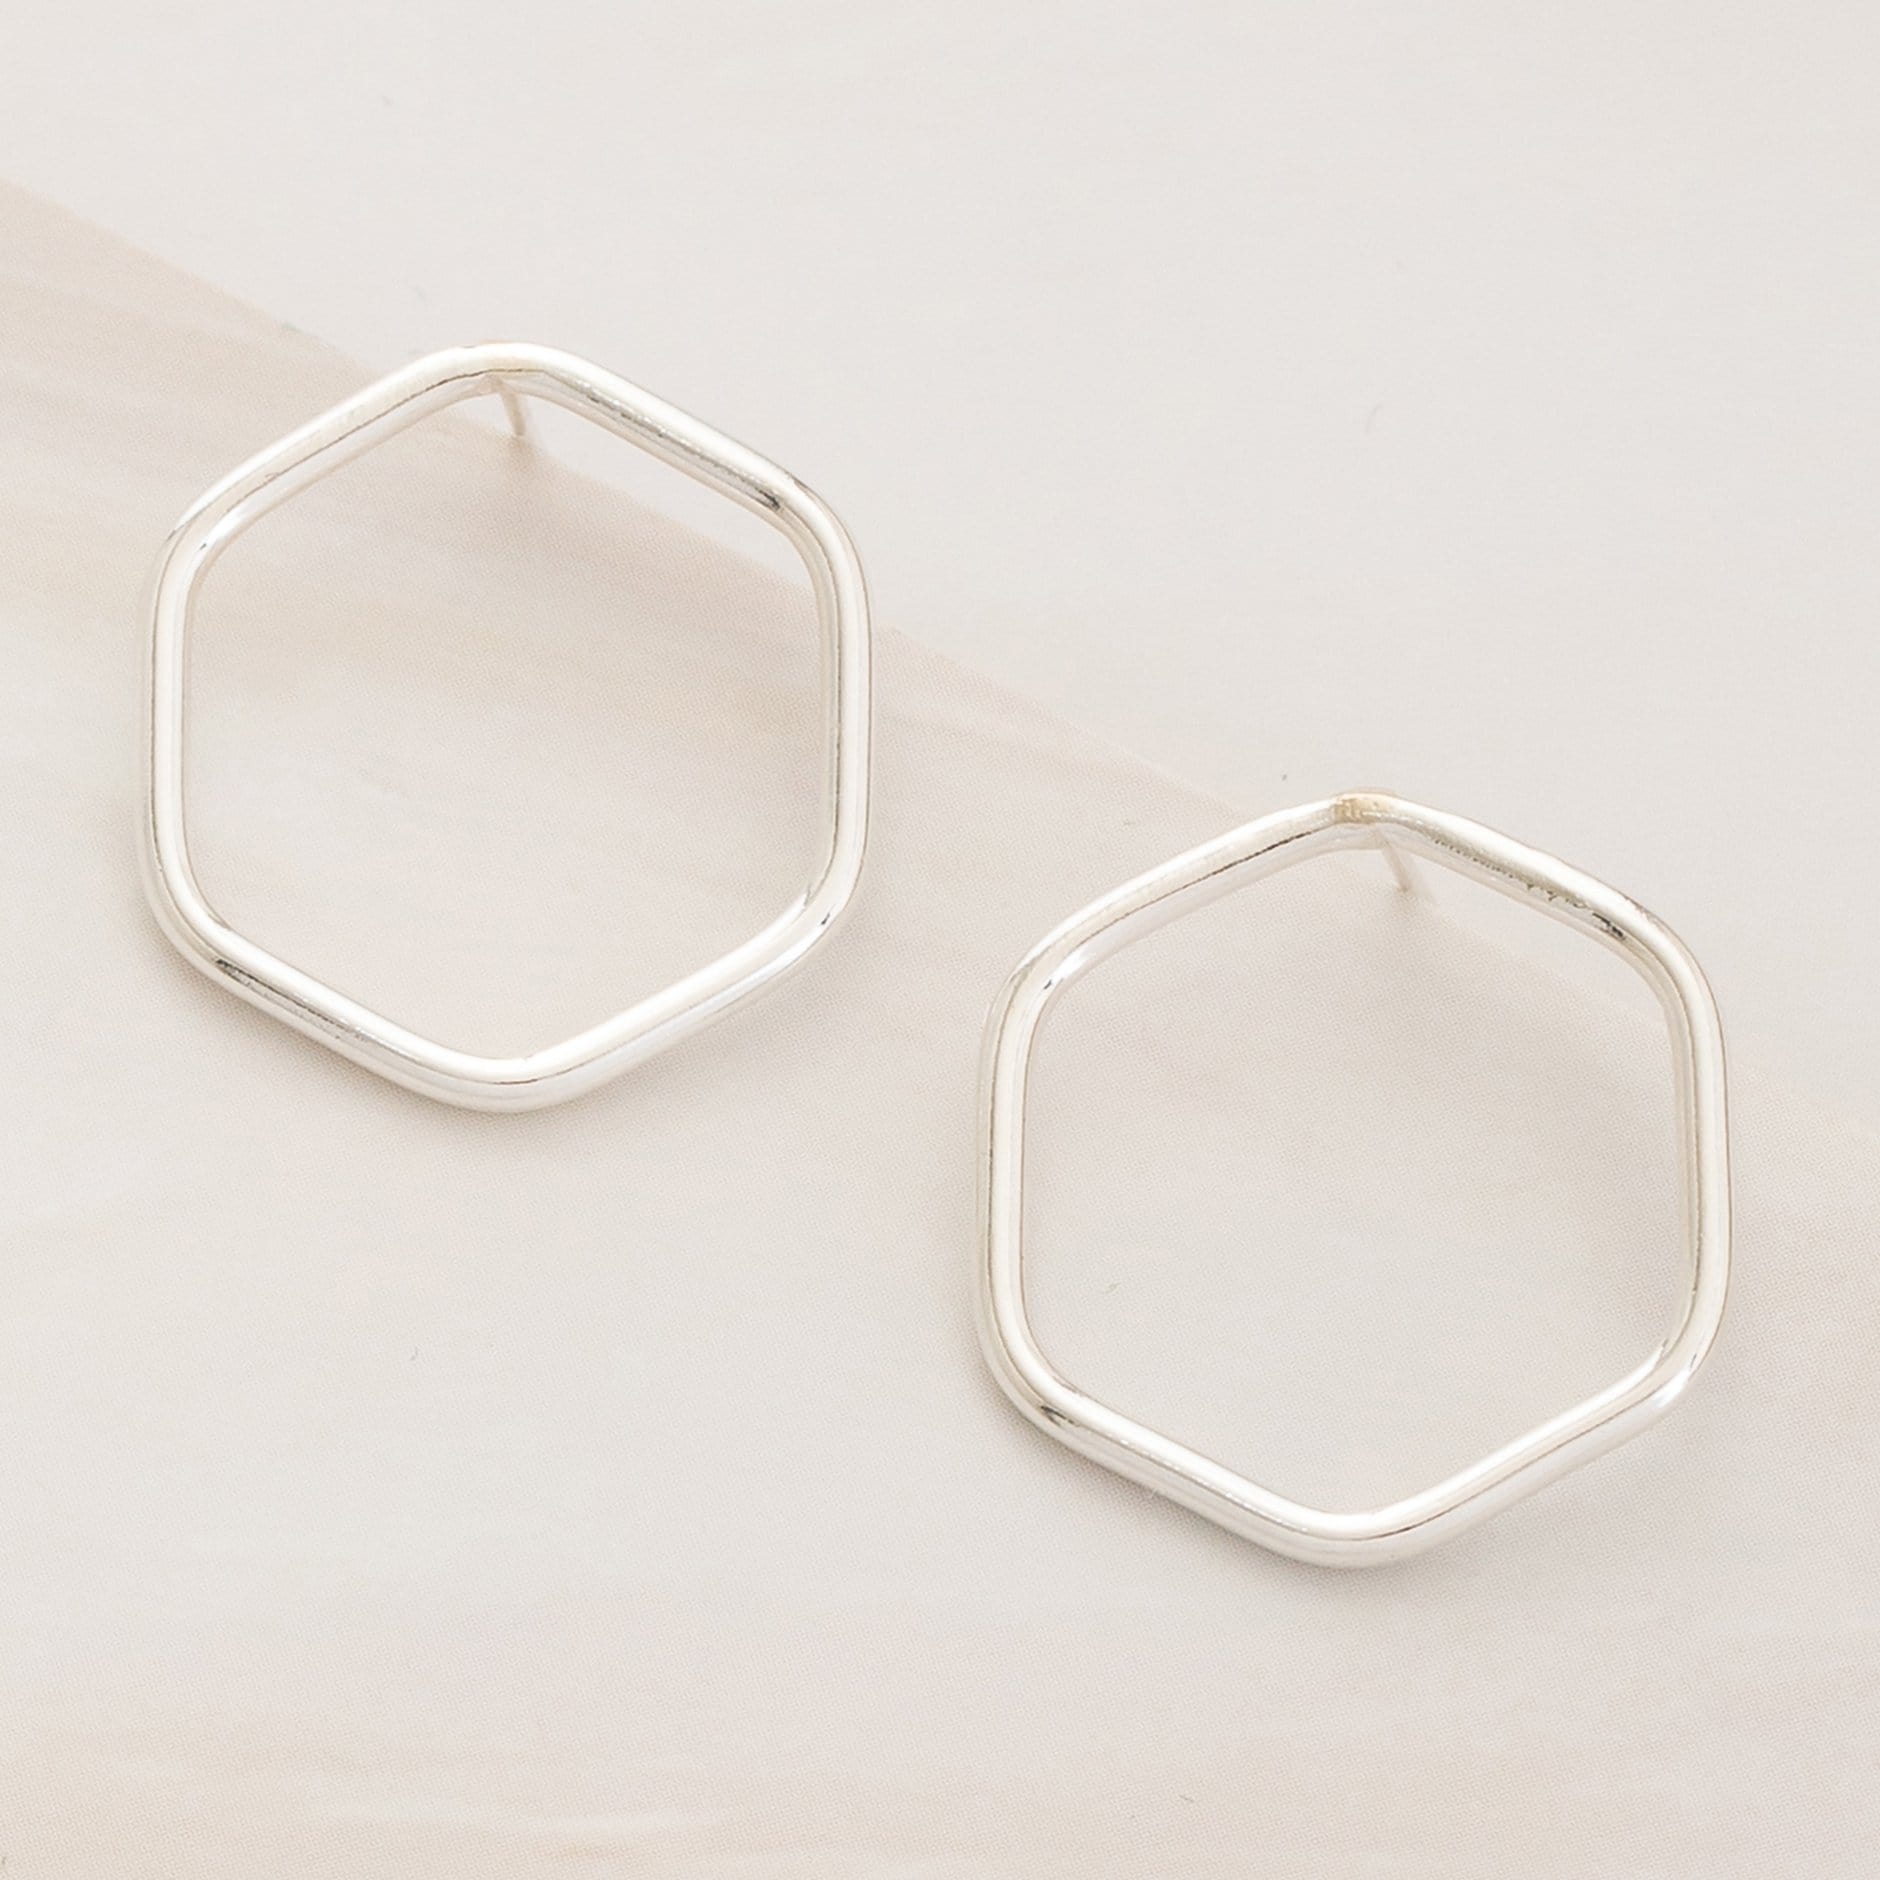 Emblem Jewelry Earrings Silver Tone Modern Geometry Hexagon Stud Earrings